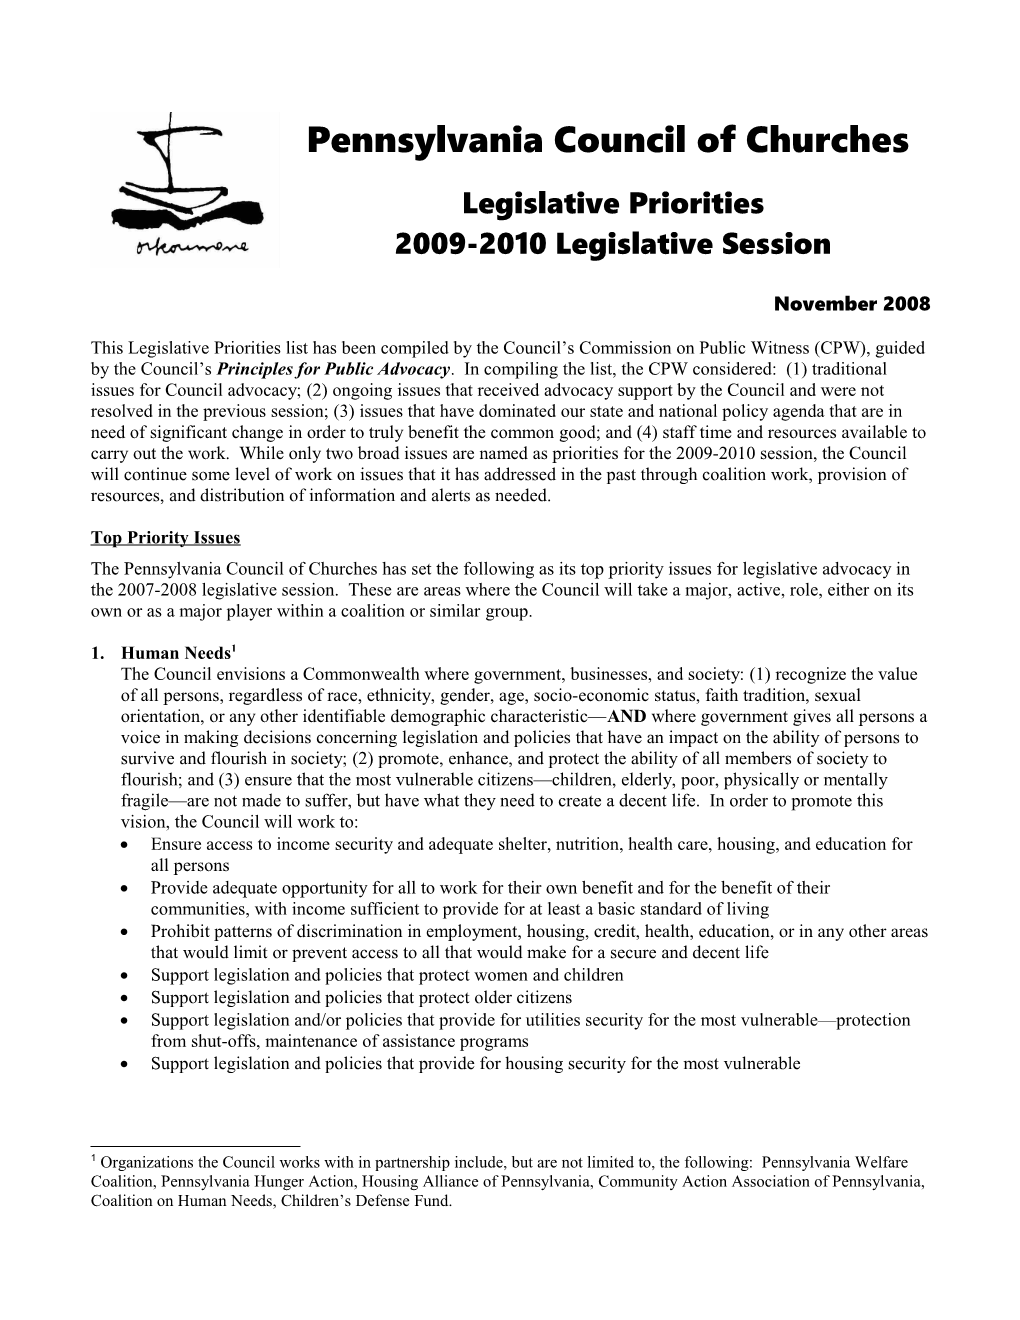 PCC Legislative Priorities 2009-2010